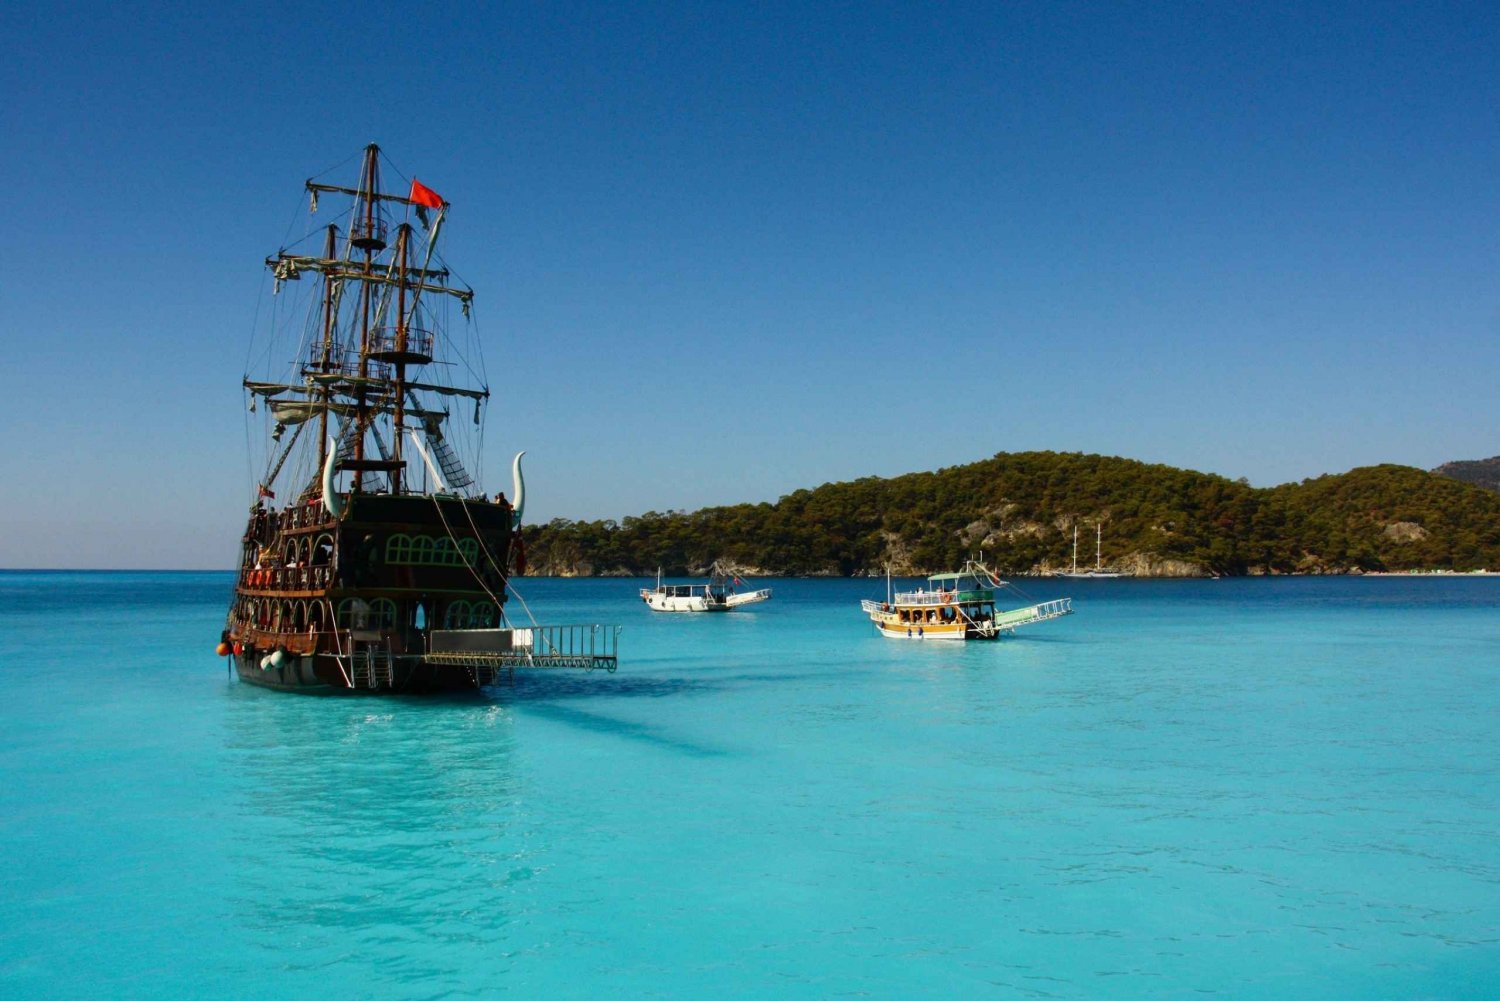 Ölüdeniz: Piratenschifffahrt mit Badestopps und Mittagessen